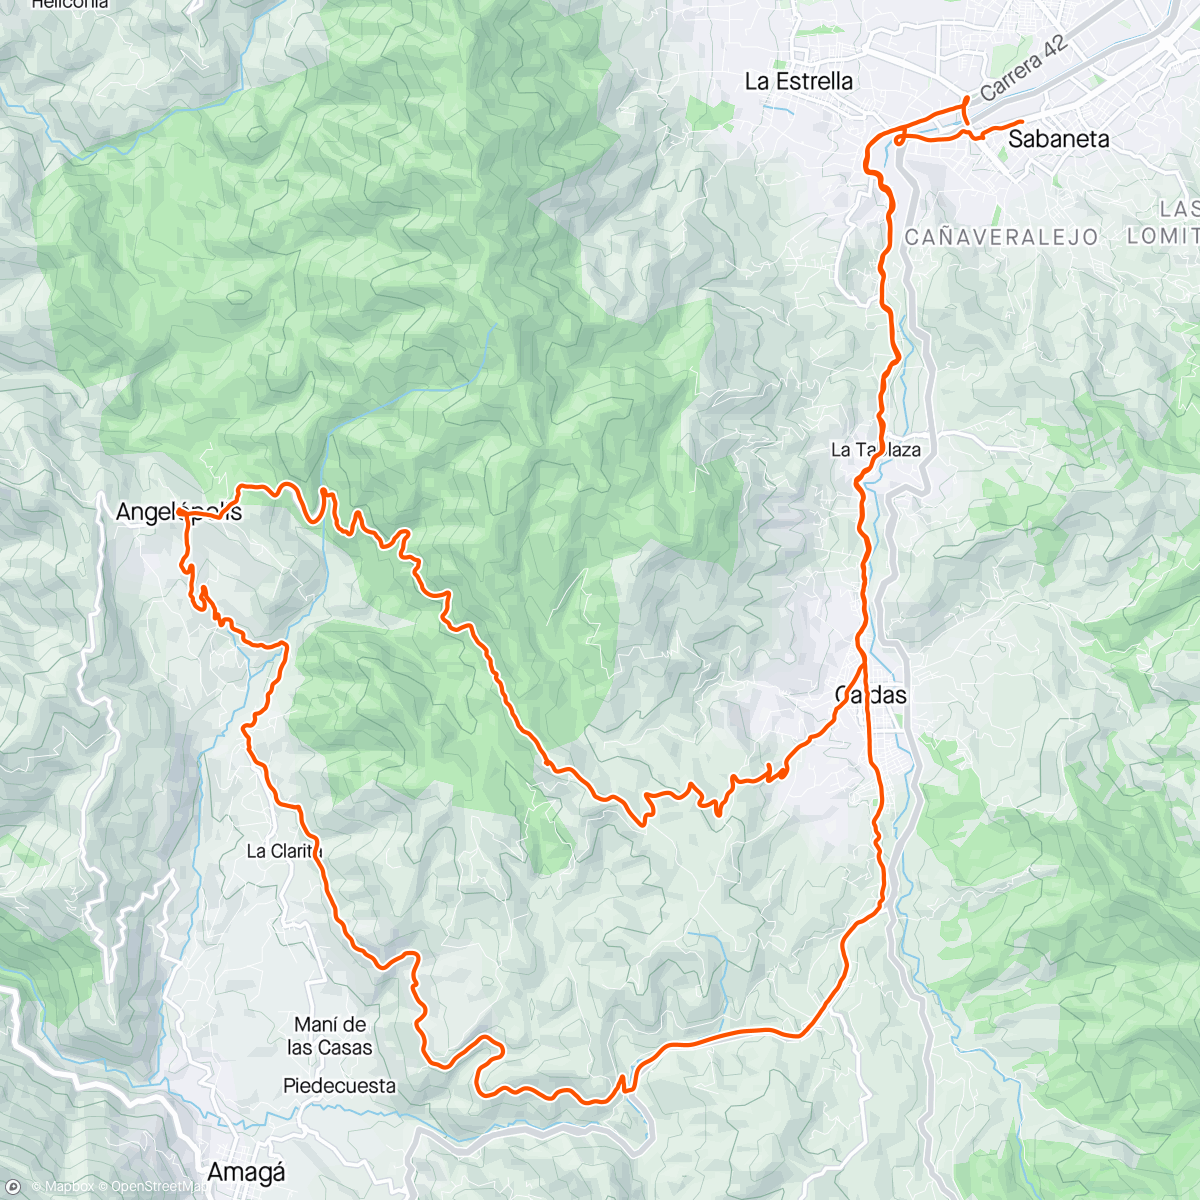 Mapa da atividade, Angelópolis minas del carbón